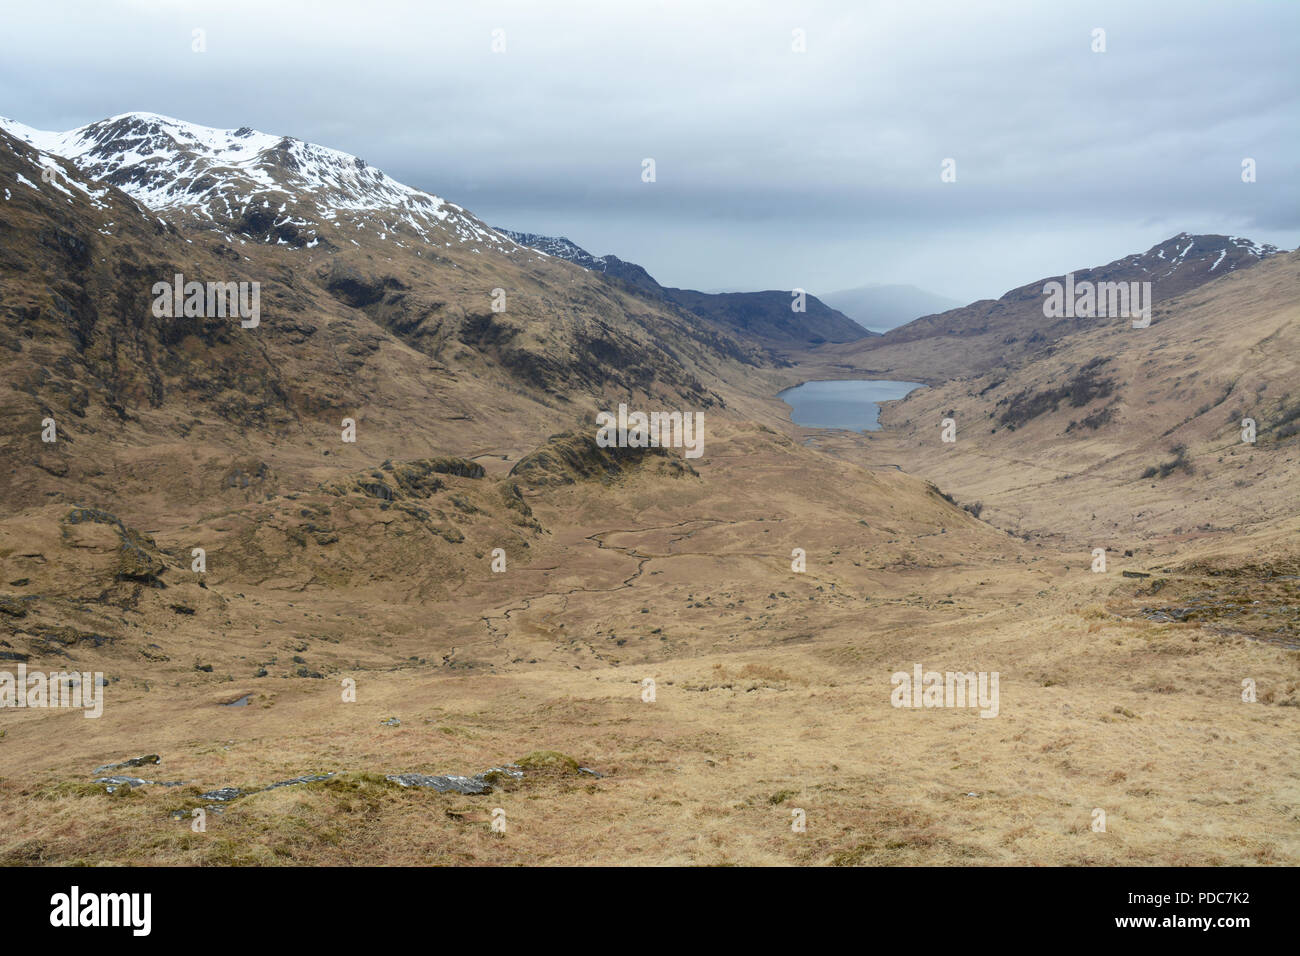 Le sentier le long de la vallée menant à Inverie de Kinloch Hourn dans les Highlands écossais, Knoydart Peninsula, nord-ouest de l'Ecosse, Grande-Bretagne. Banque D'Images